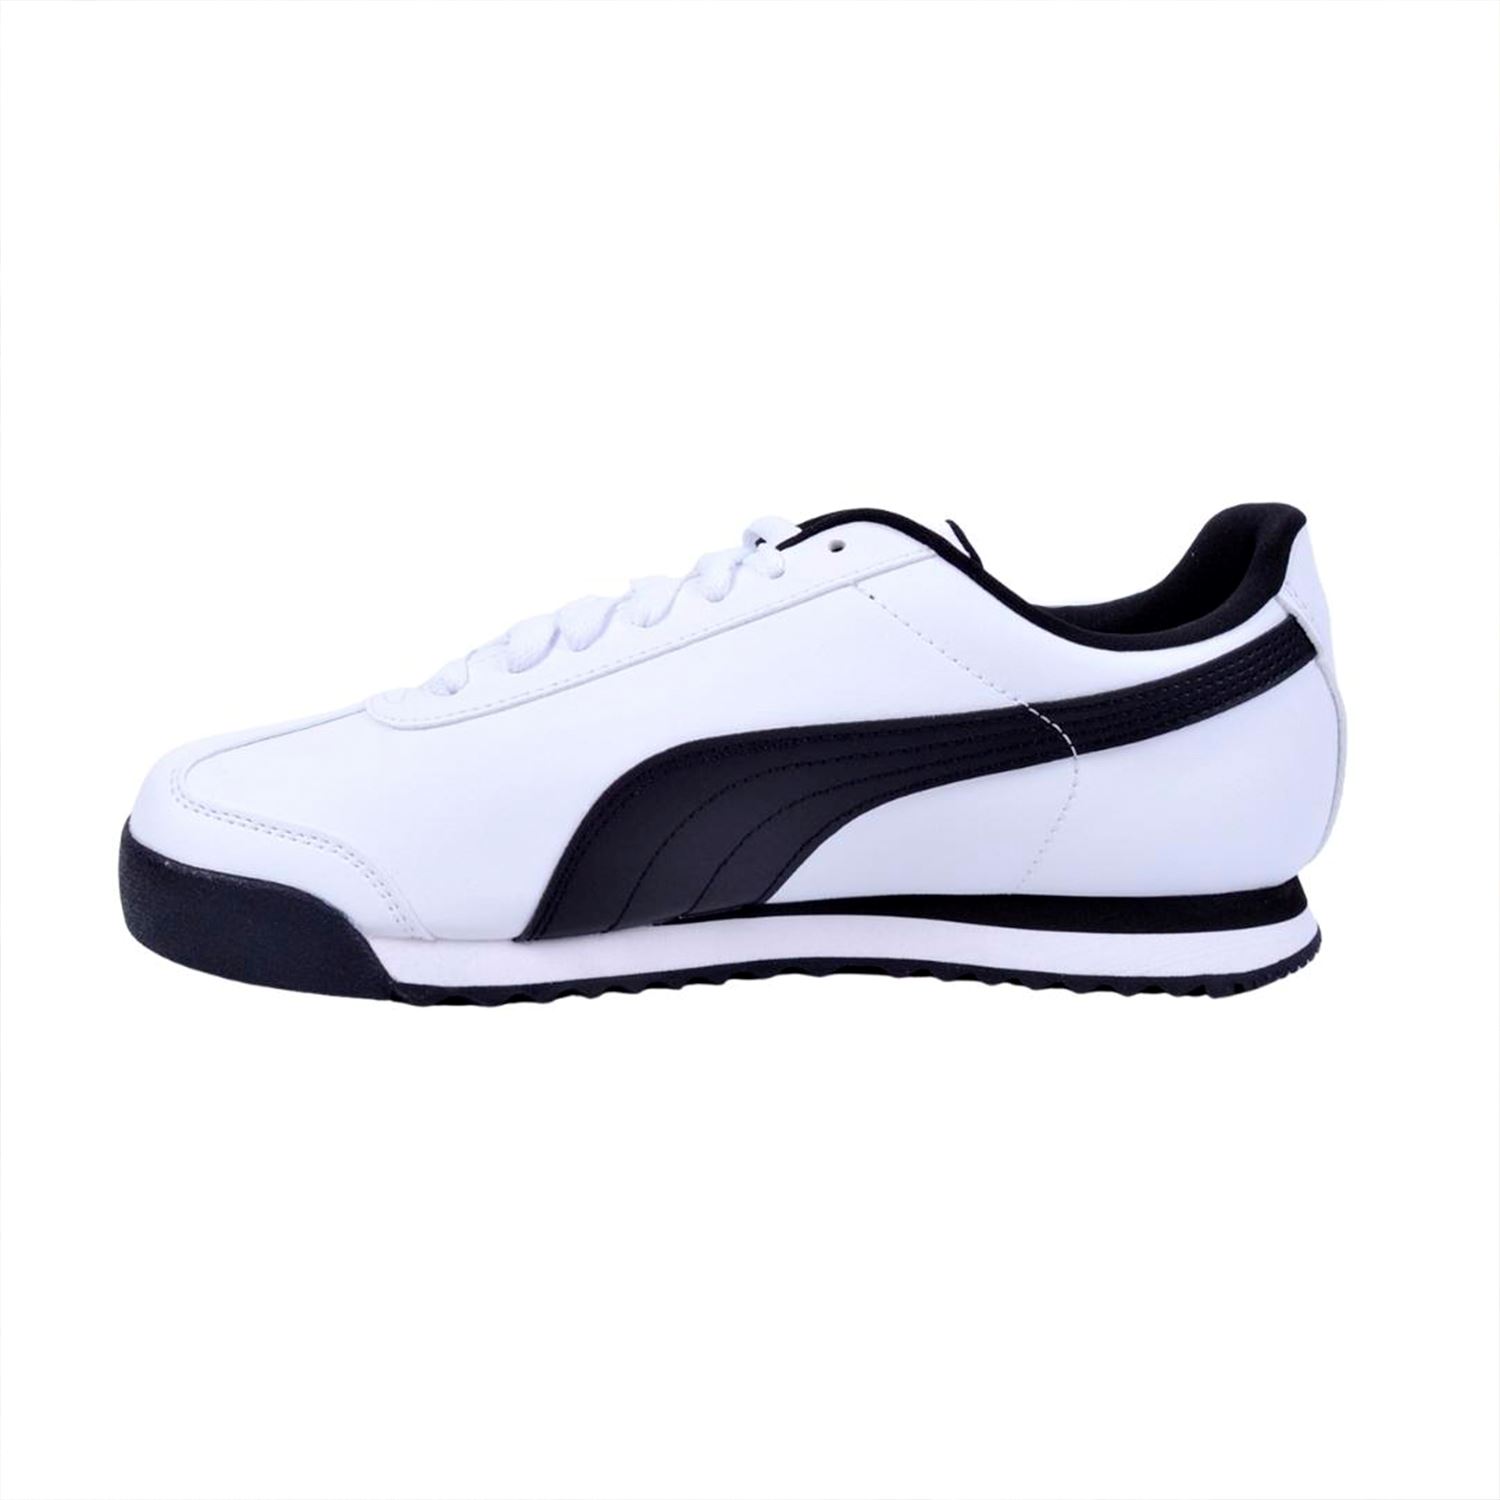 Puma 353572-04 Roma Beyaz Spor Ayakkabı